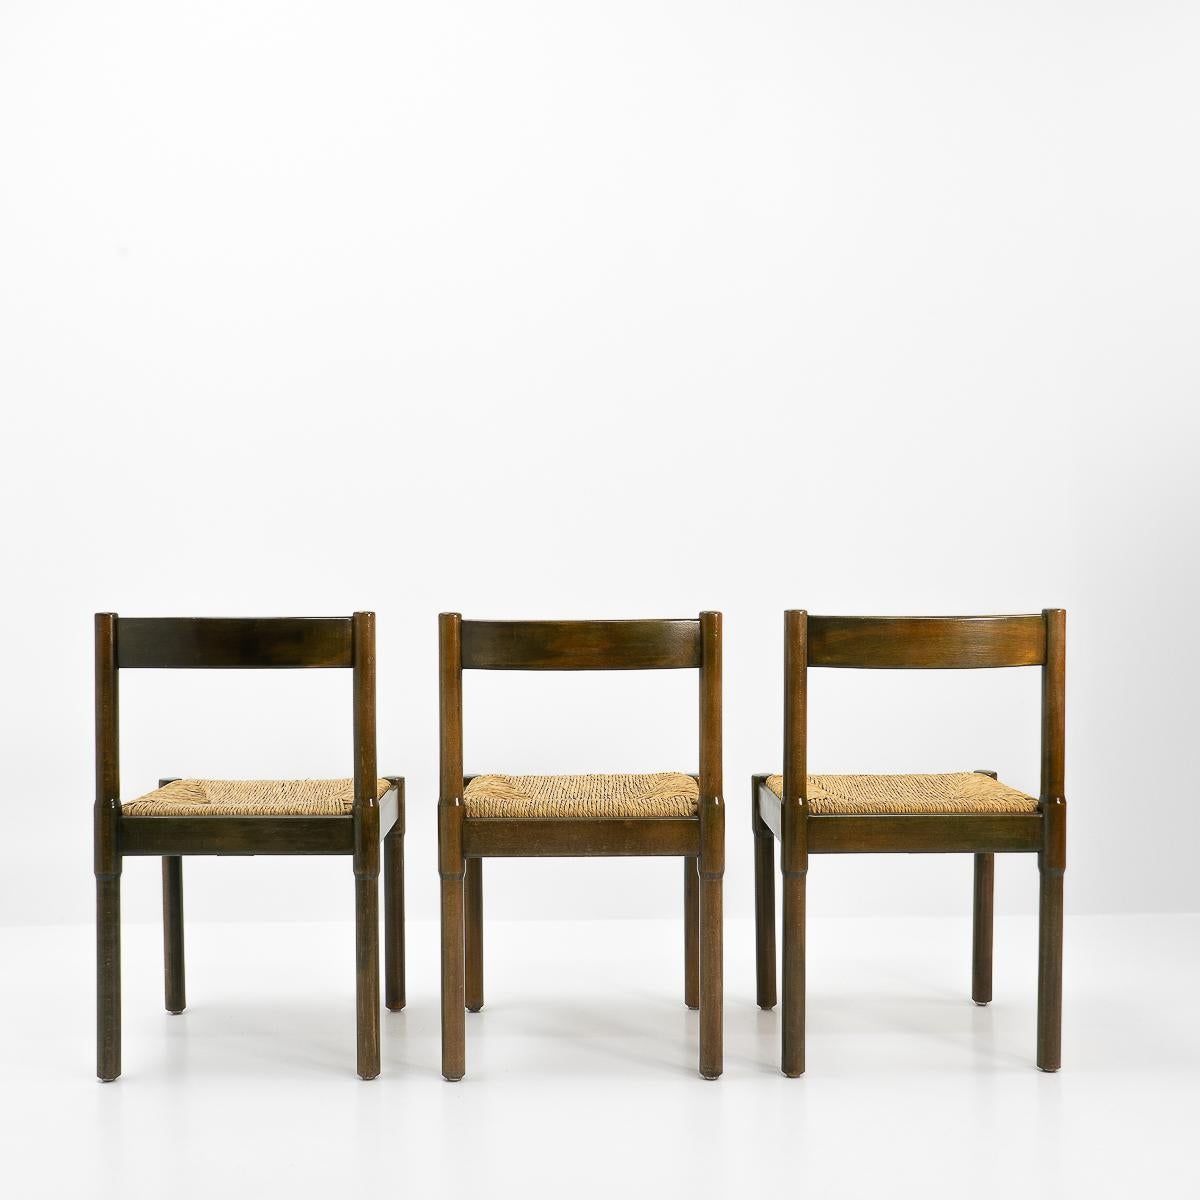 Italian Carimate Chairs by Vico Magistretti, 1960s